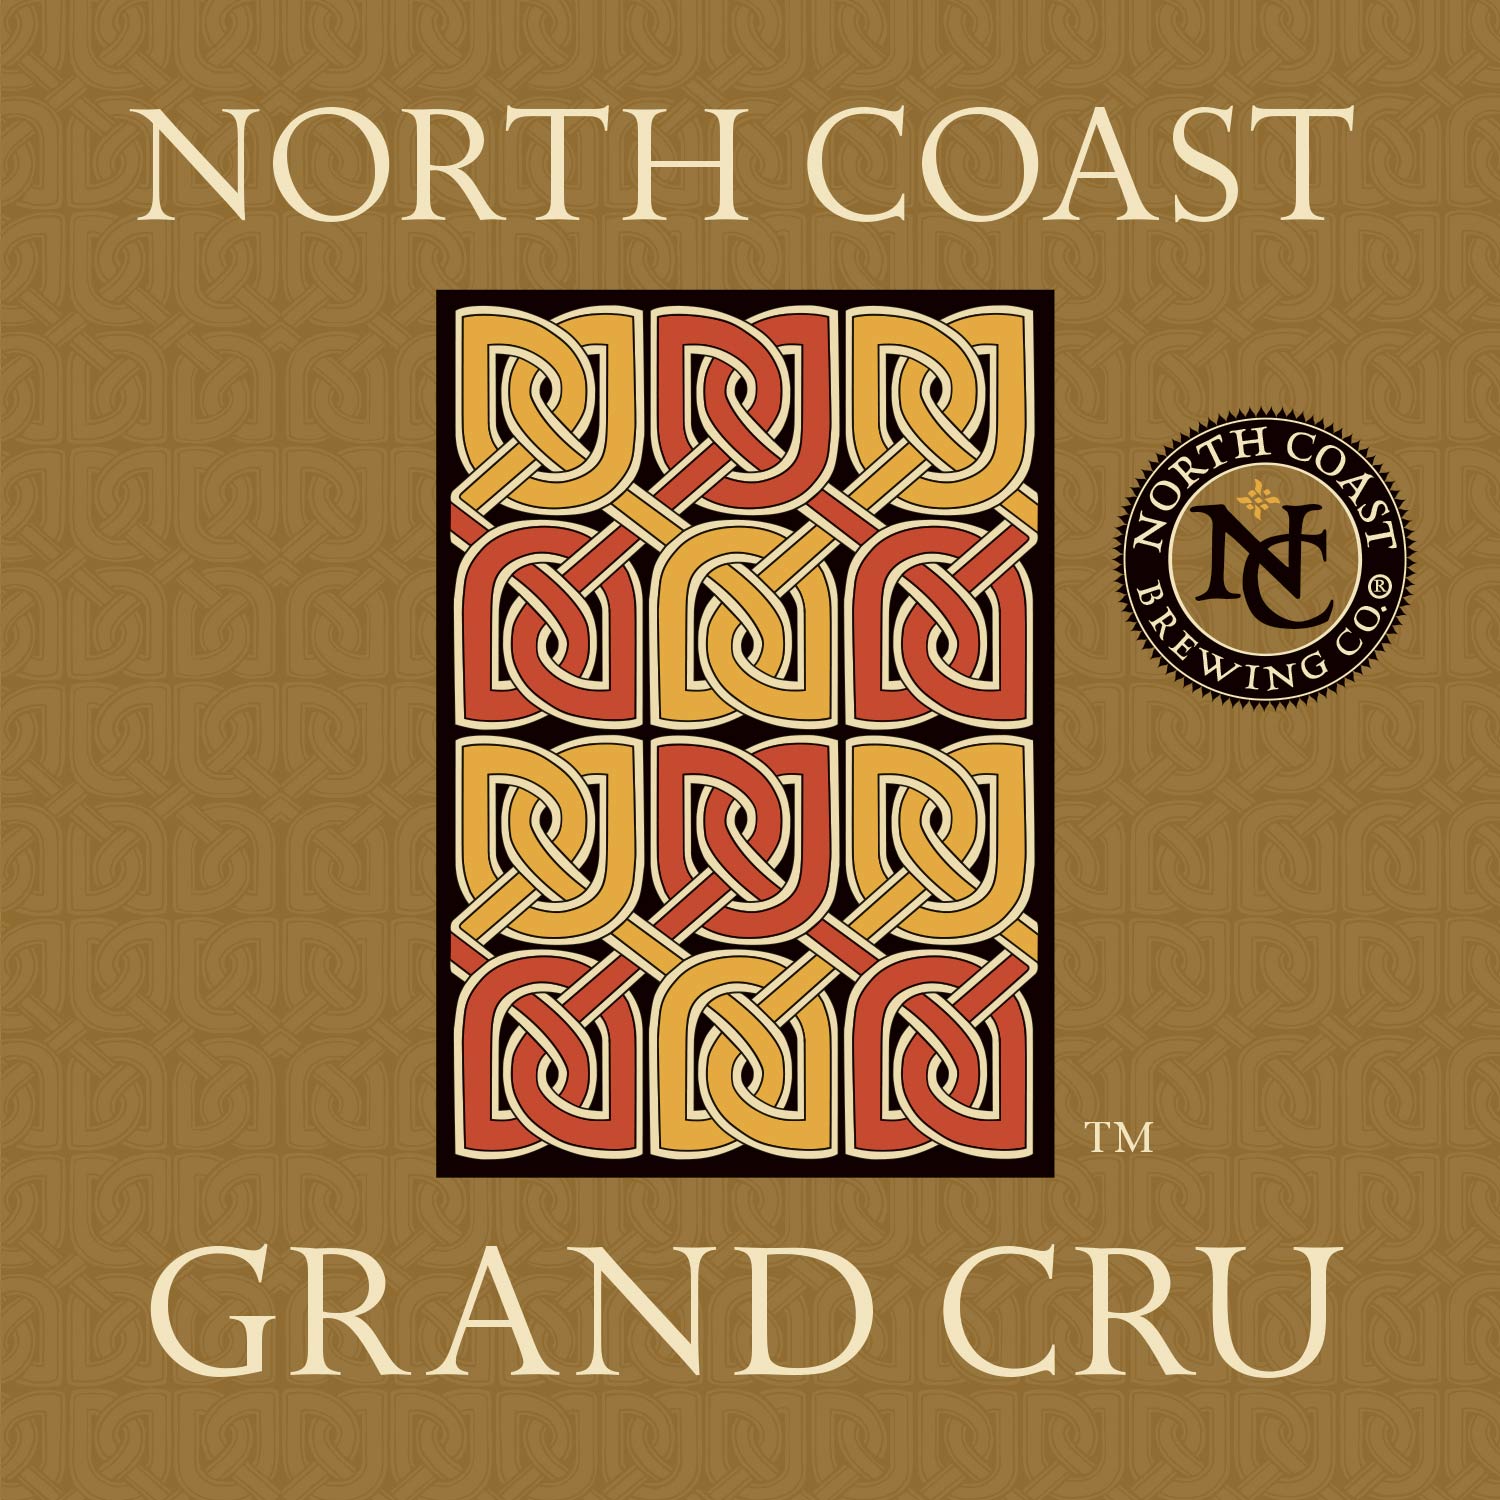 North Coast Grand Cru